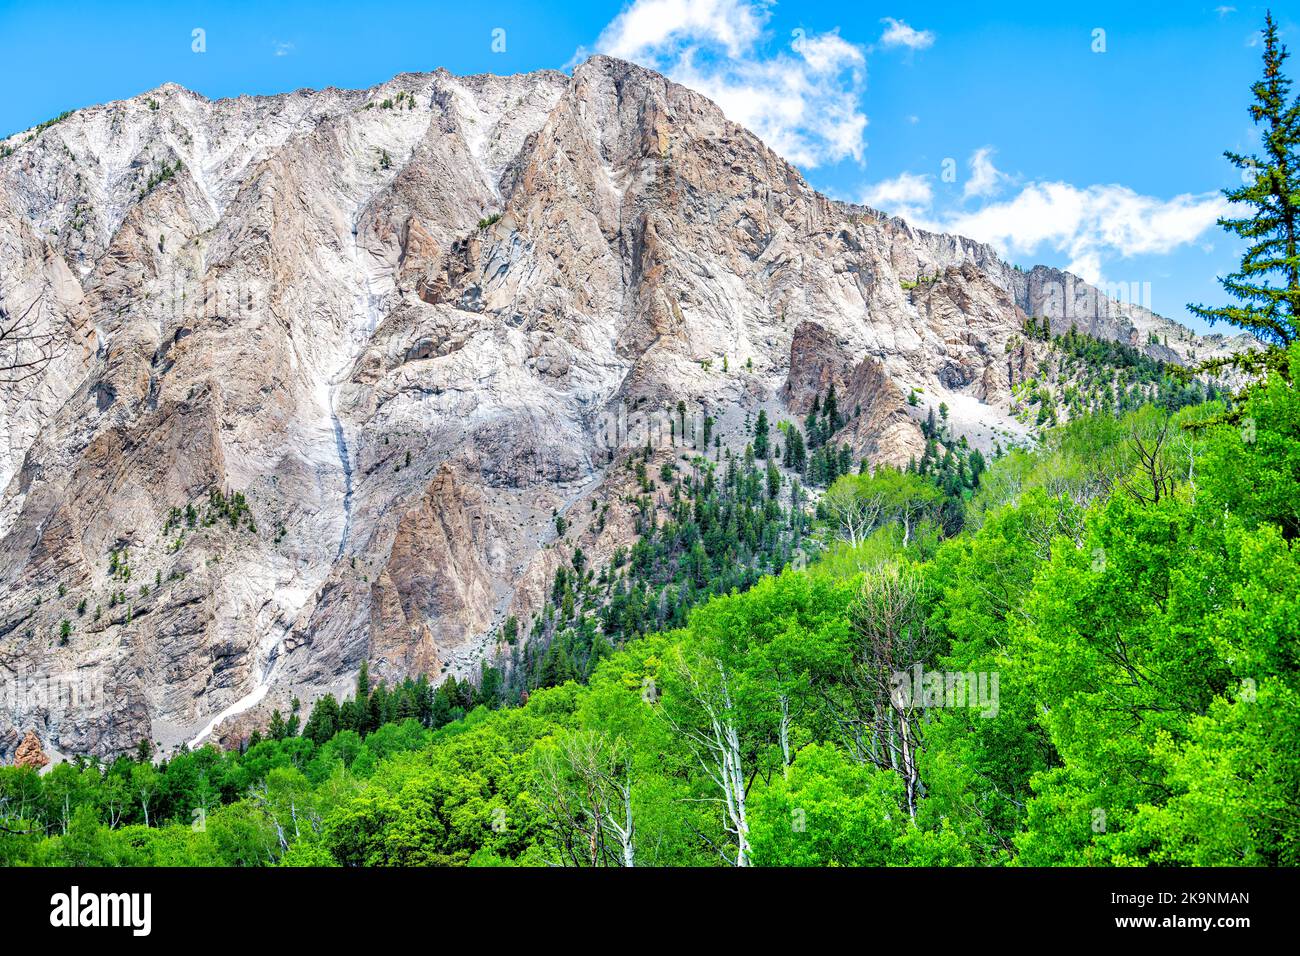 Crested Butte verdeggiante Aspen alberi vista del Kebler Pass montagna neve picco con montagne rocciose all'inizio dell'estate del 2019 Foto Stock